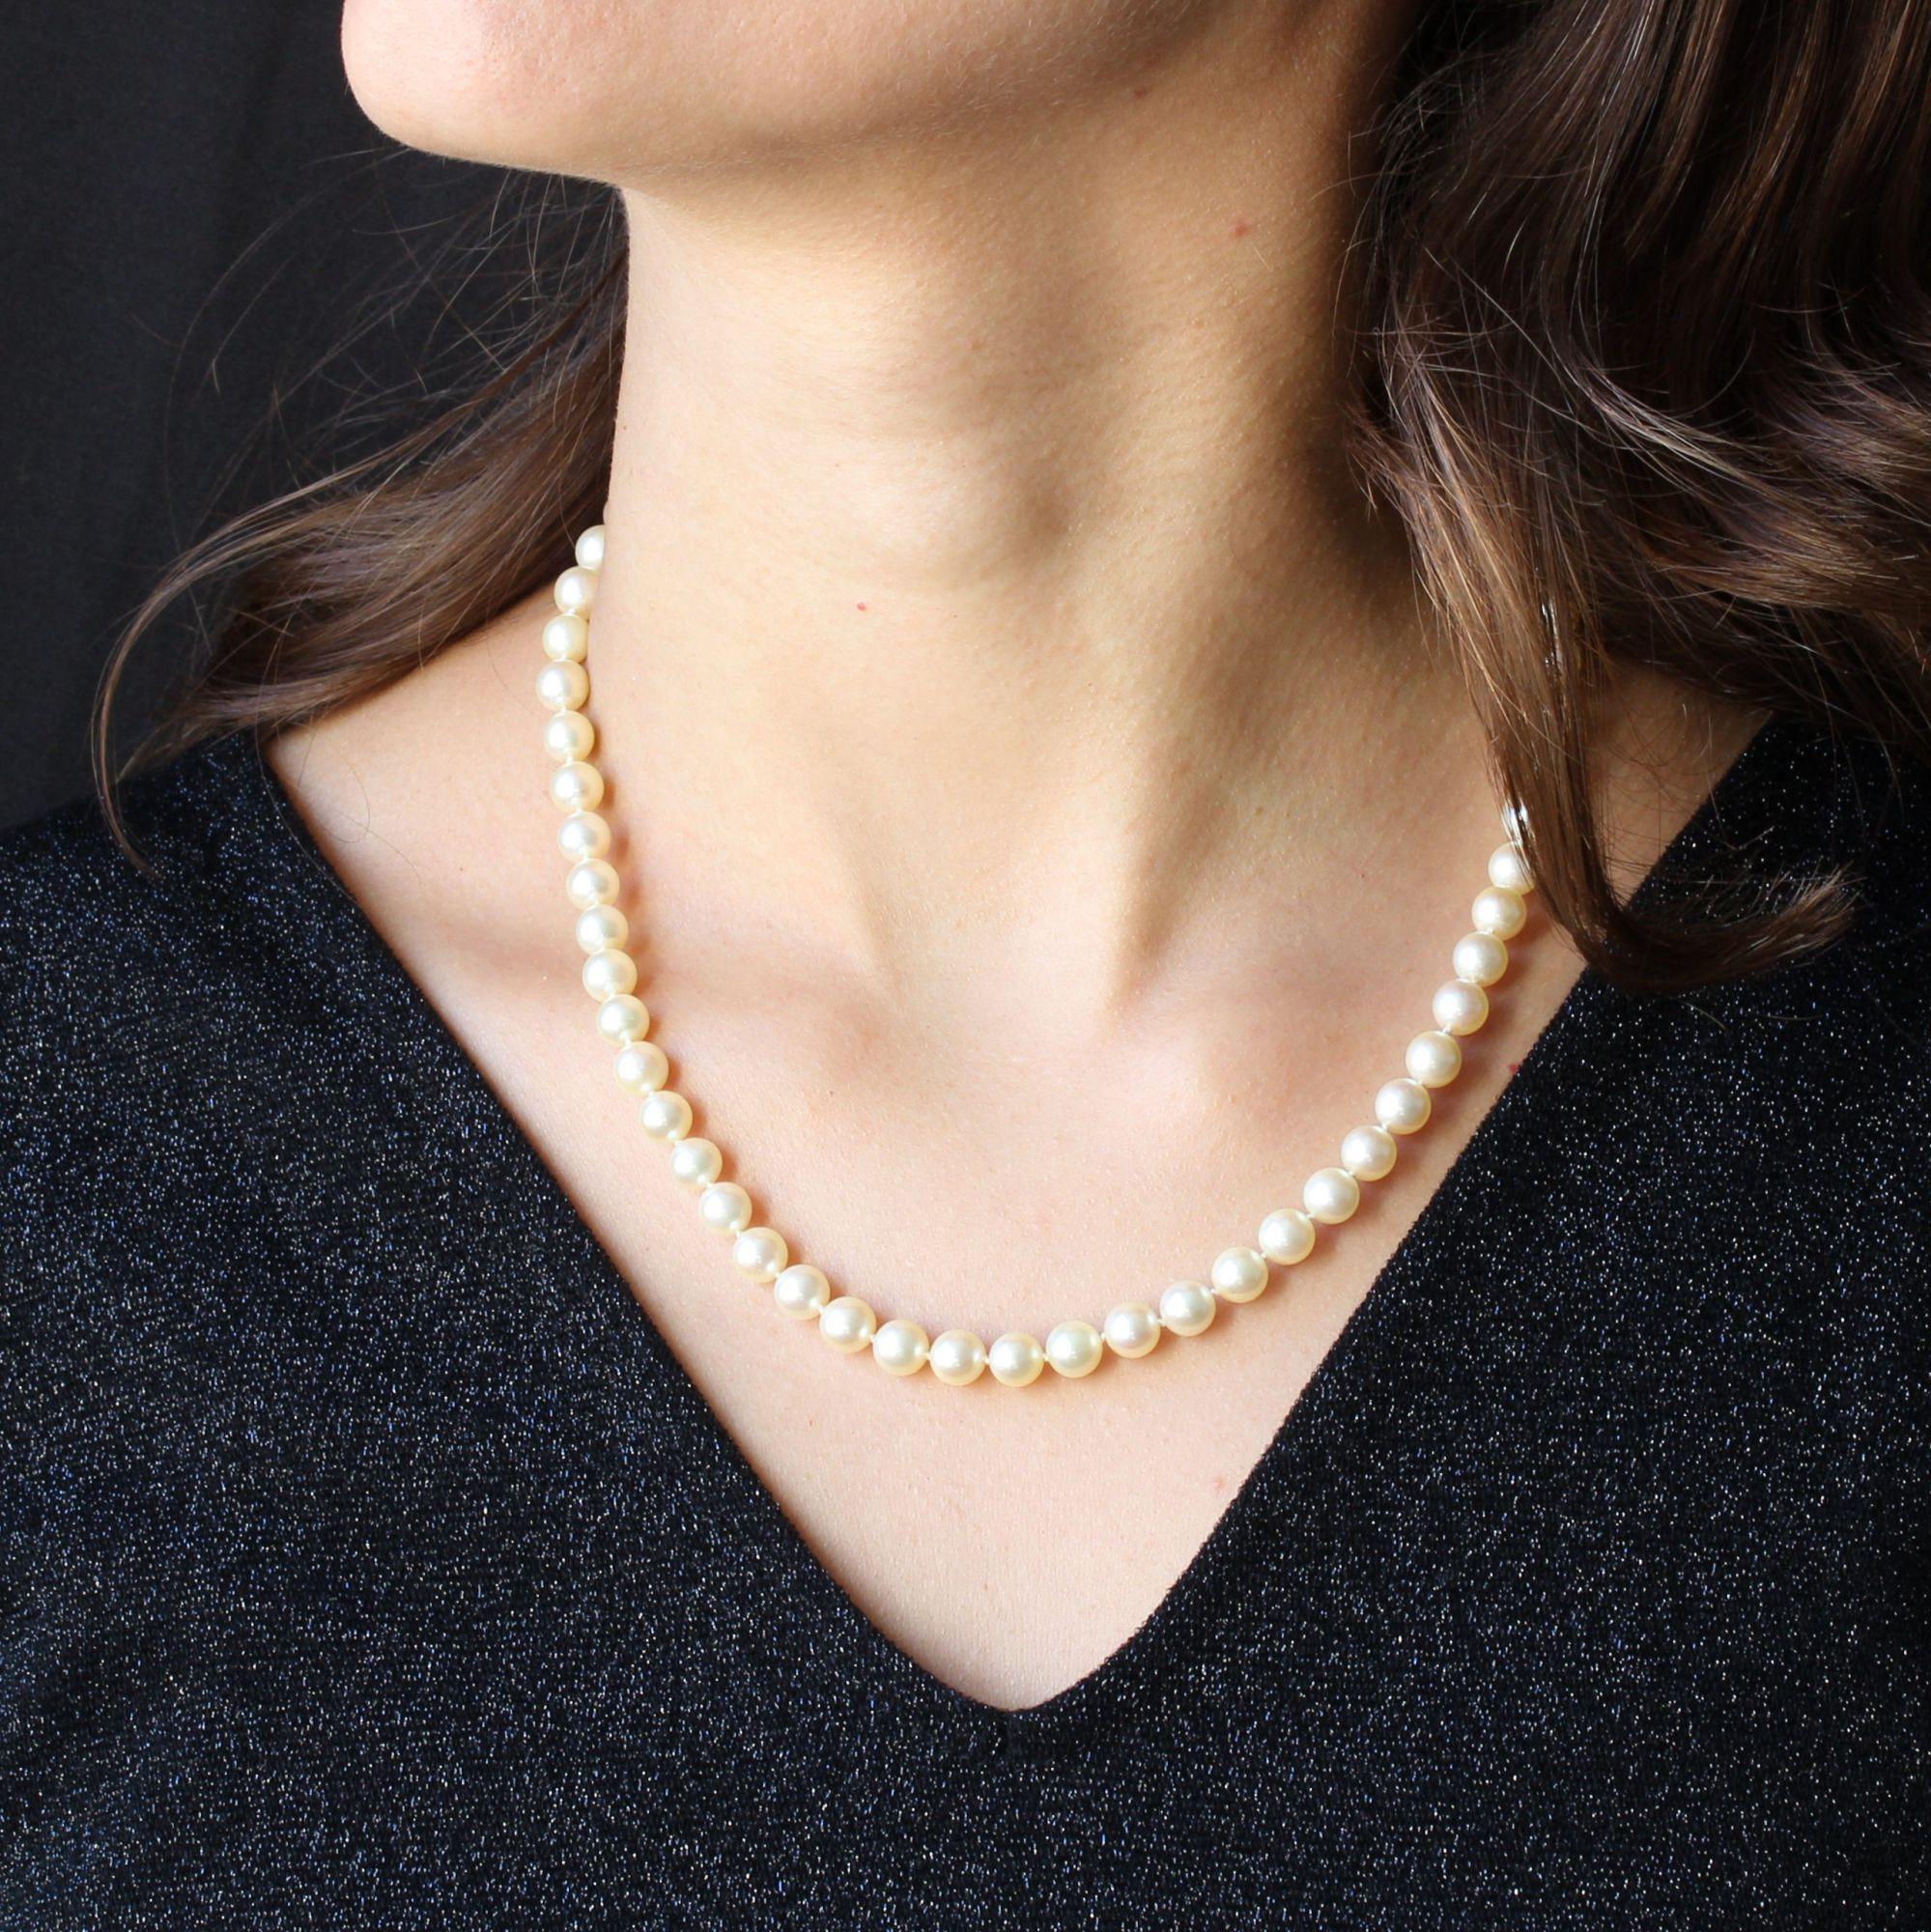 Collier ras du cou de perles de culture, dégradé blanc orient.
Le fermoir est une perle en or jaune 18 carats, décorée de godrons, à cliquet avec chaîne de sécurité.
Diamètre des perles : 6,5/7 mm.
Longueur : 46 cm.
Poids total du Jewell : 28,6 g